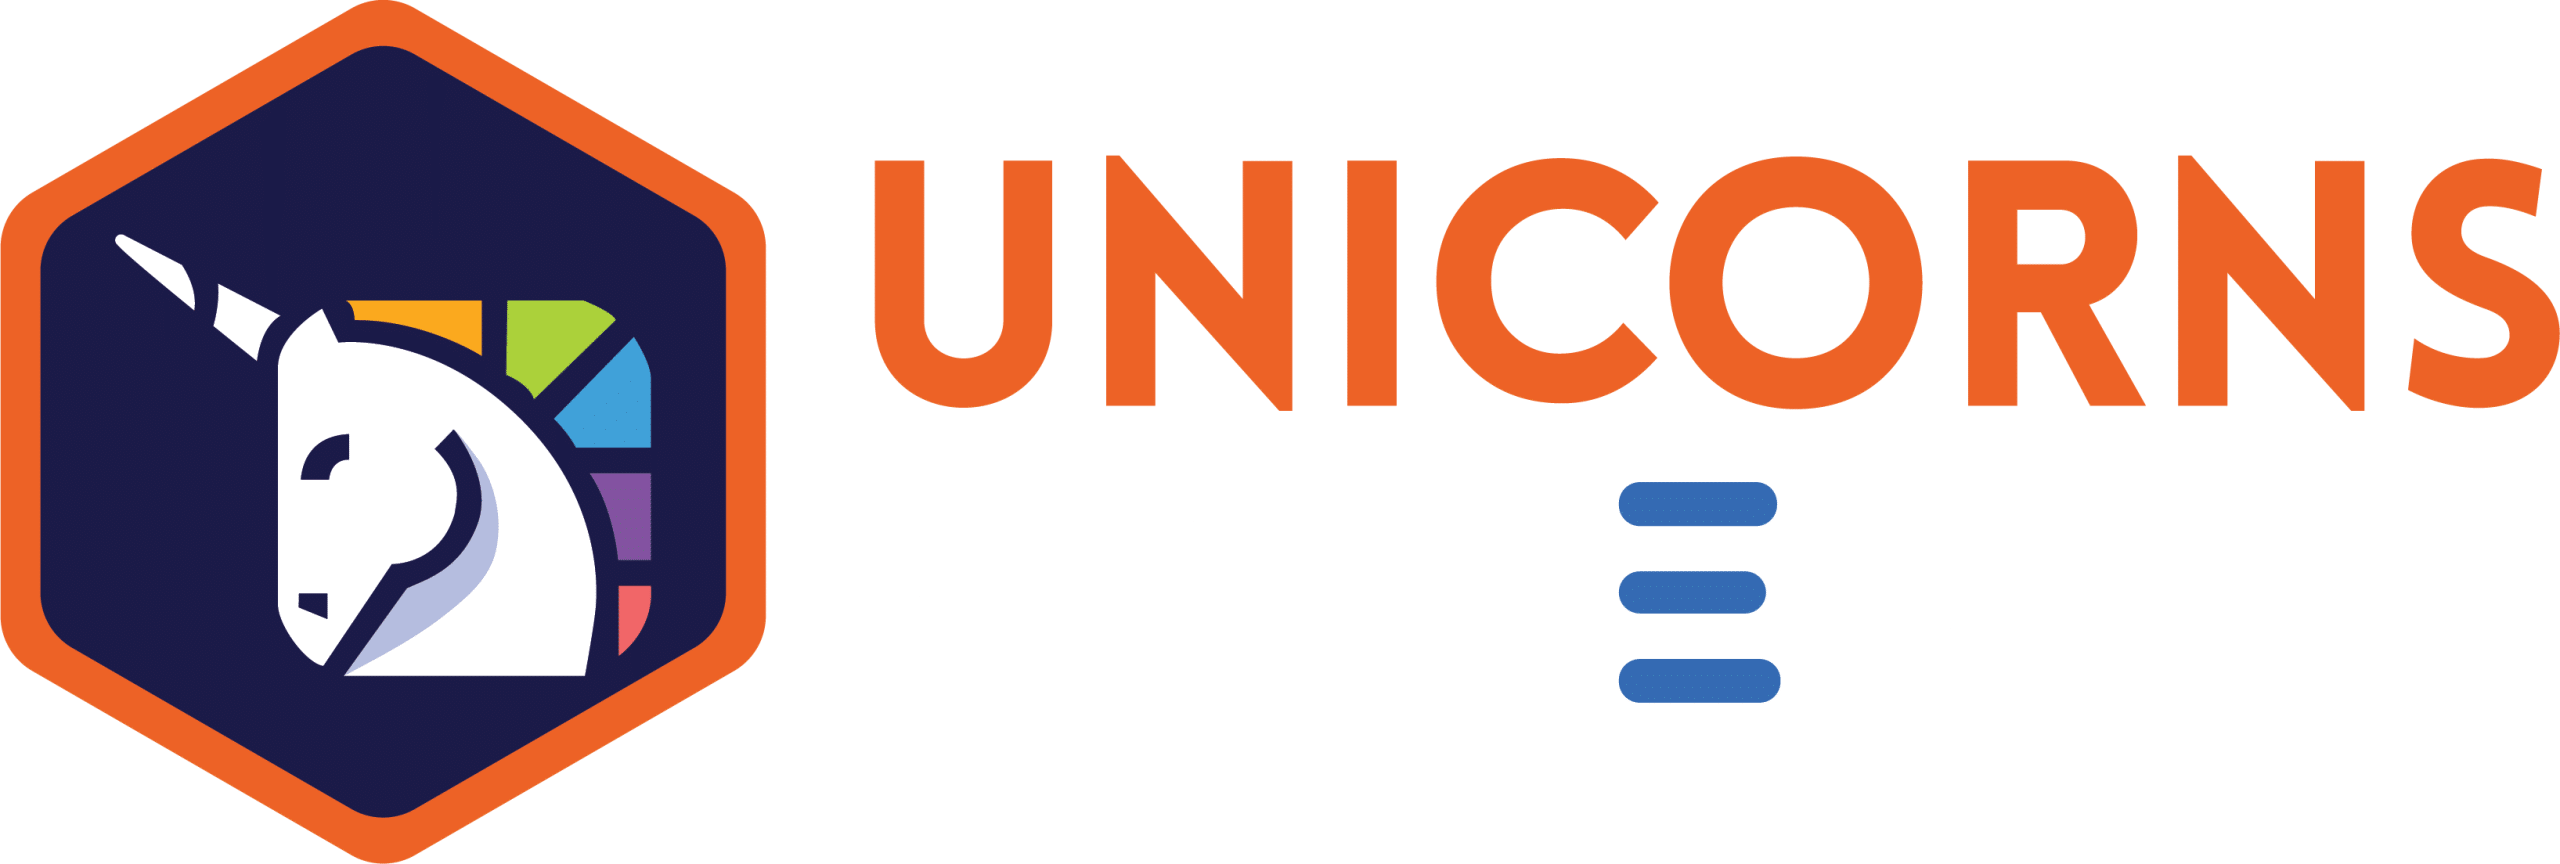 Unicorns Codes